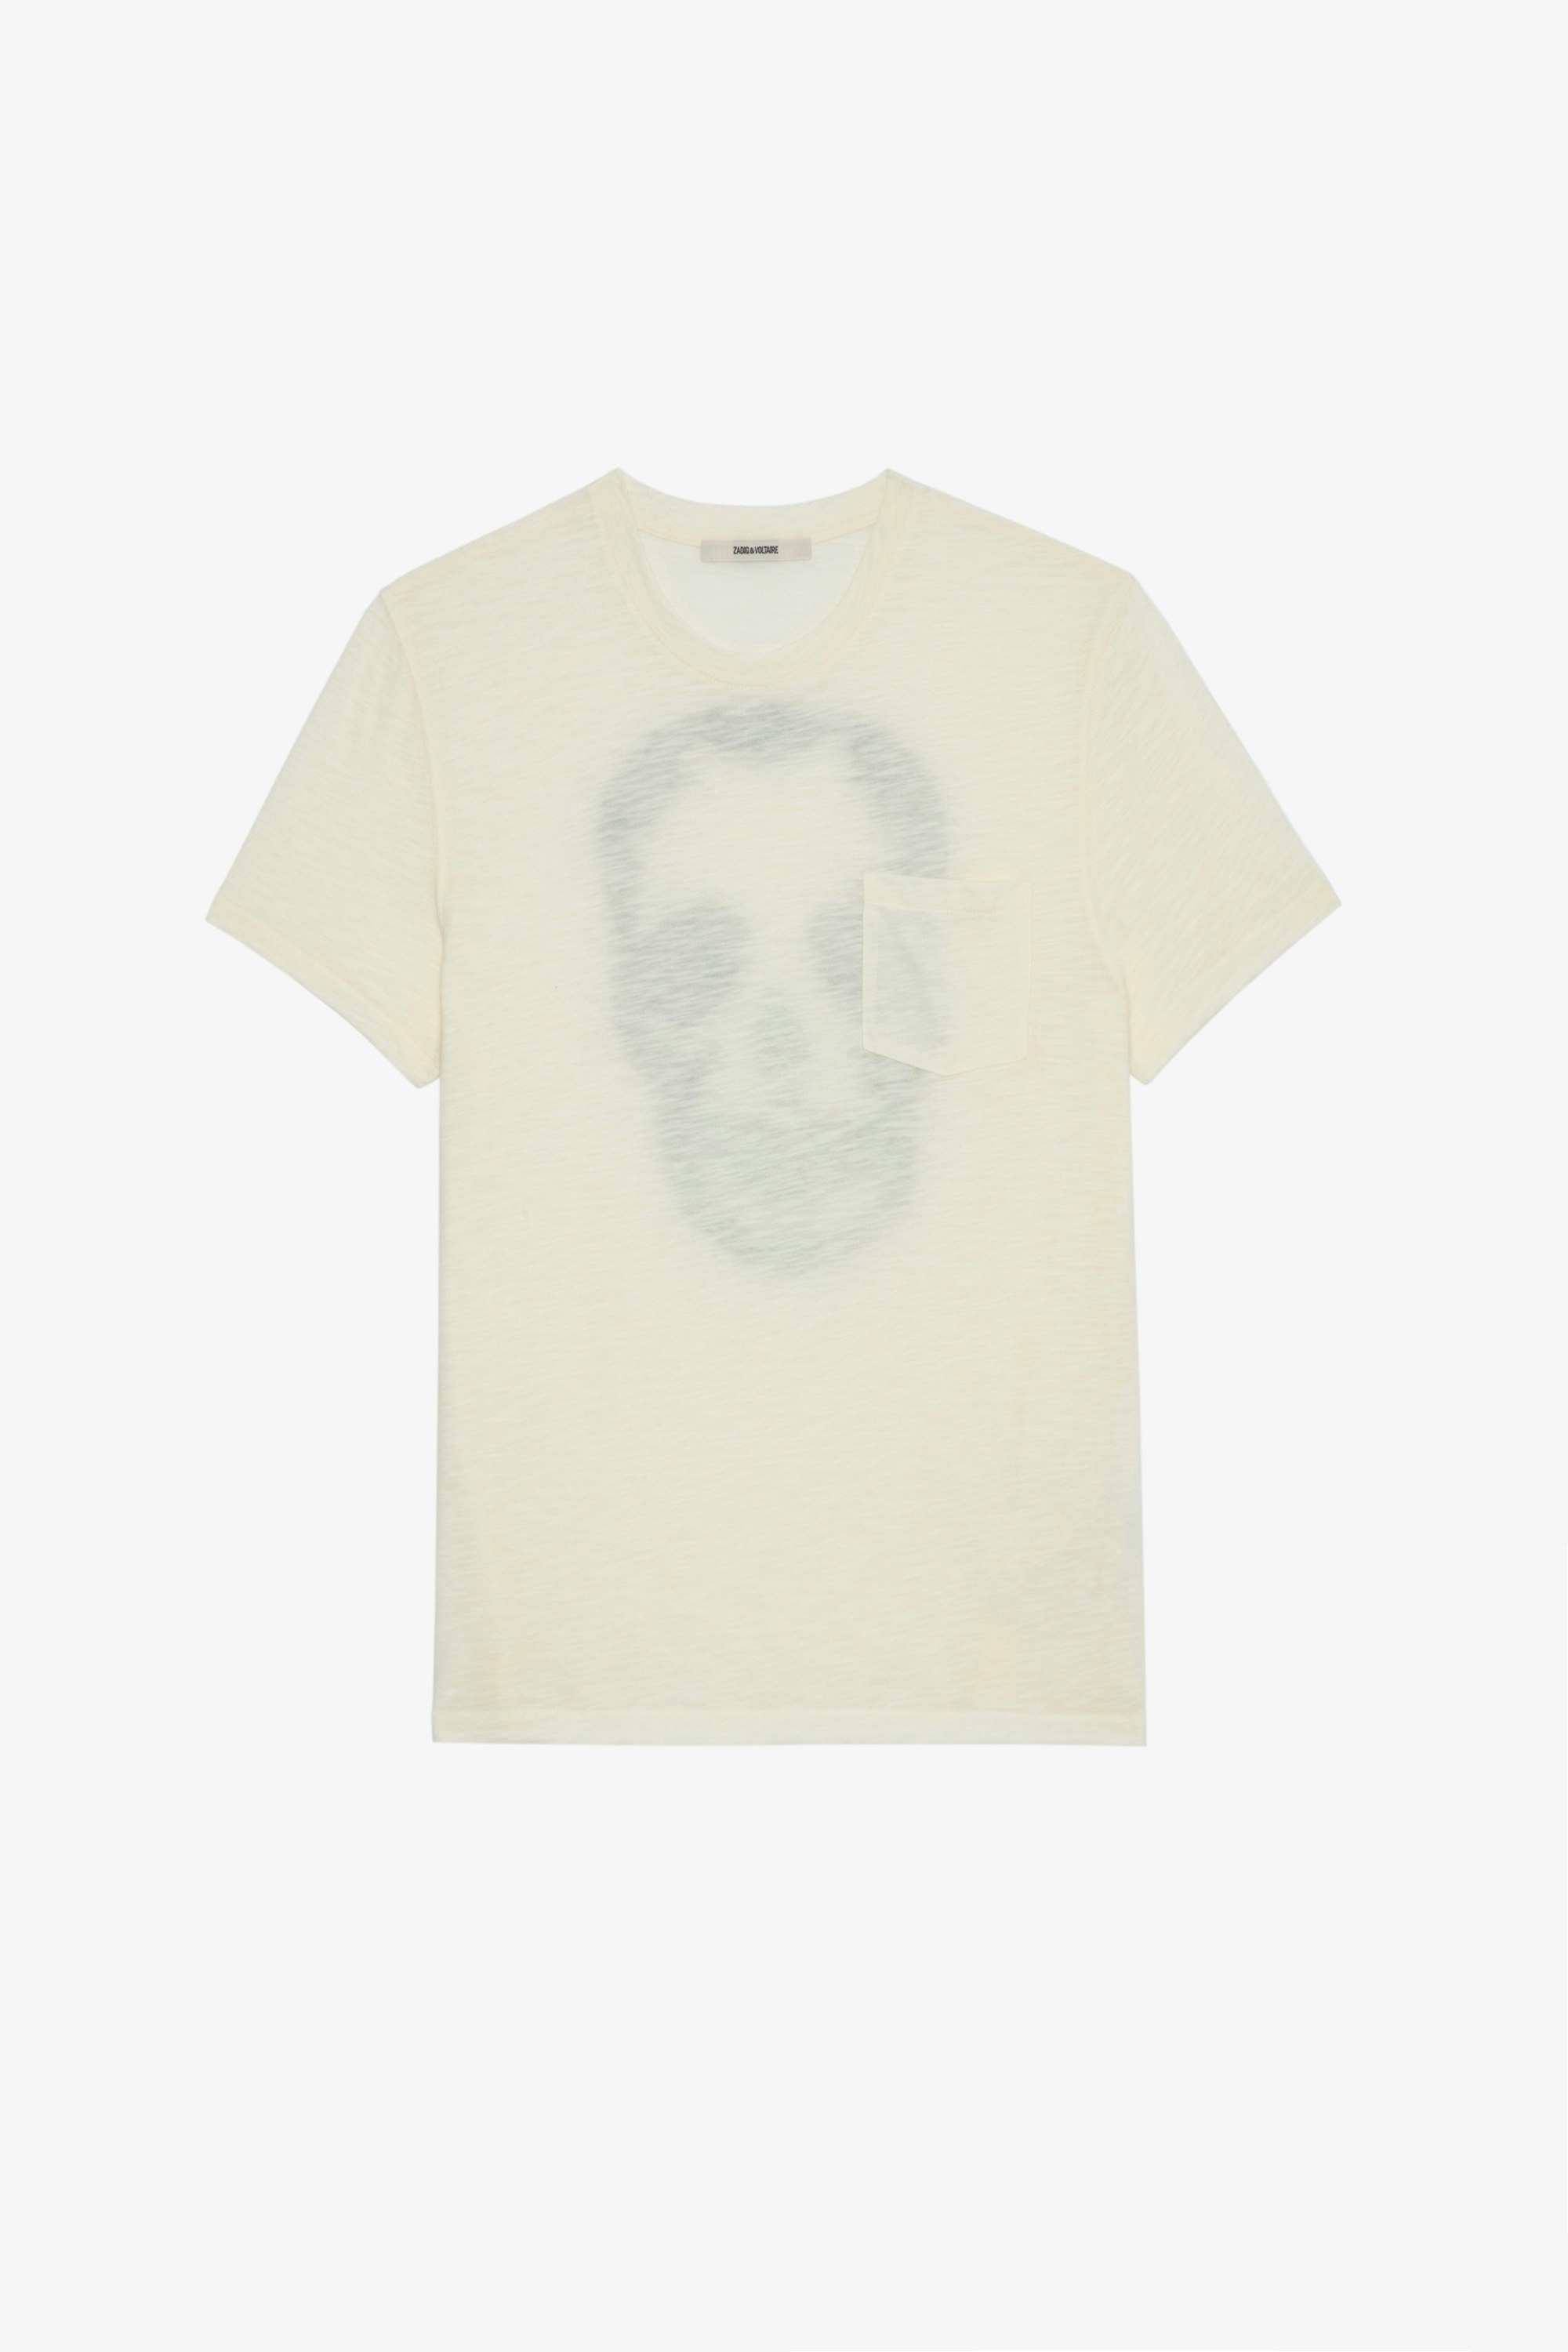 T-shirt Stockholm Flamme T-shirt en coton flammé écru orné d'un skull au dos Homme